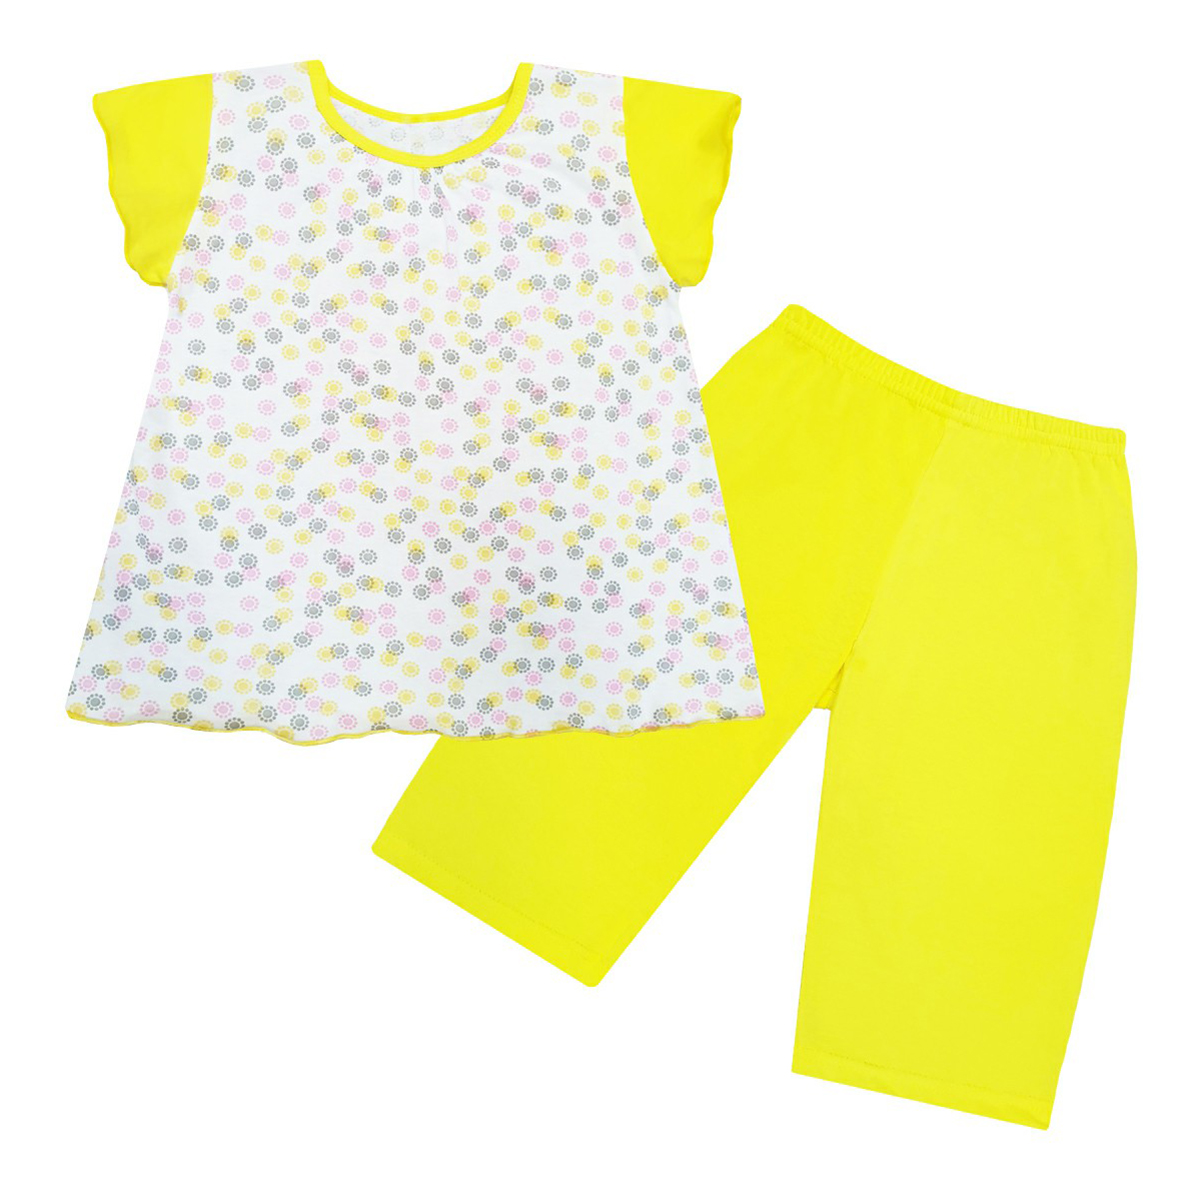 Пижама Каждый день цв. бело-желтый р. 30 рост 110